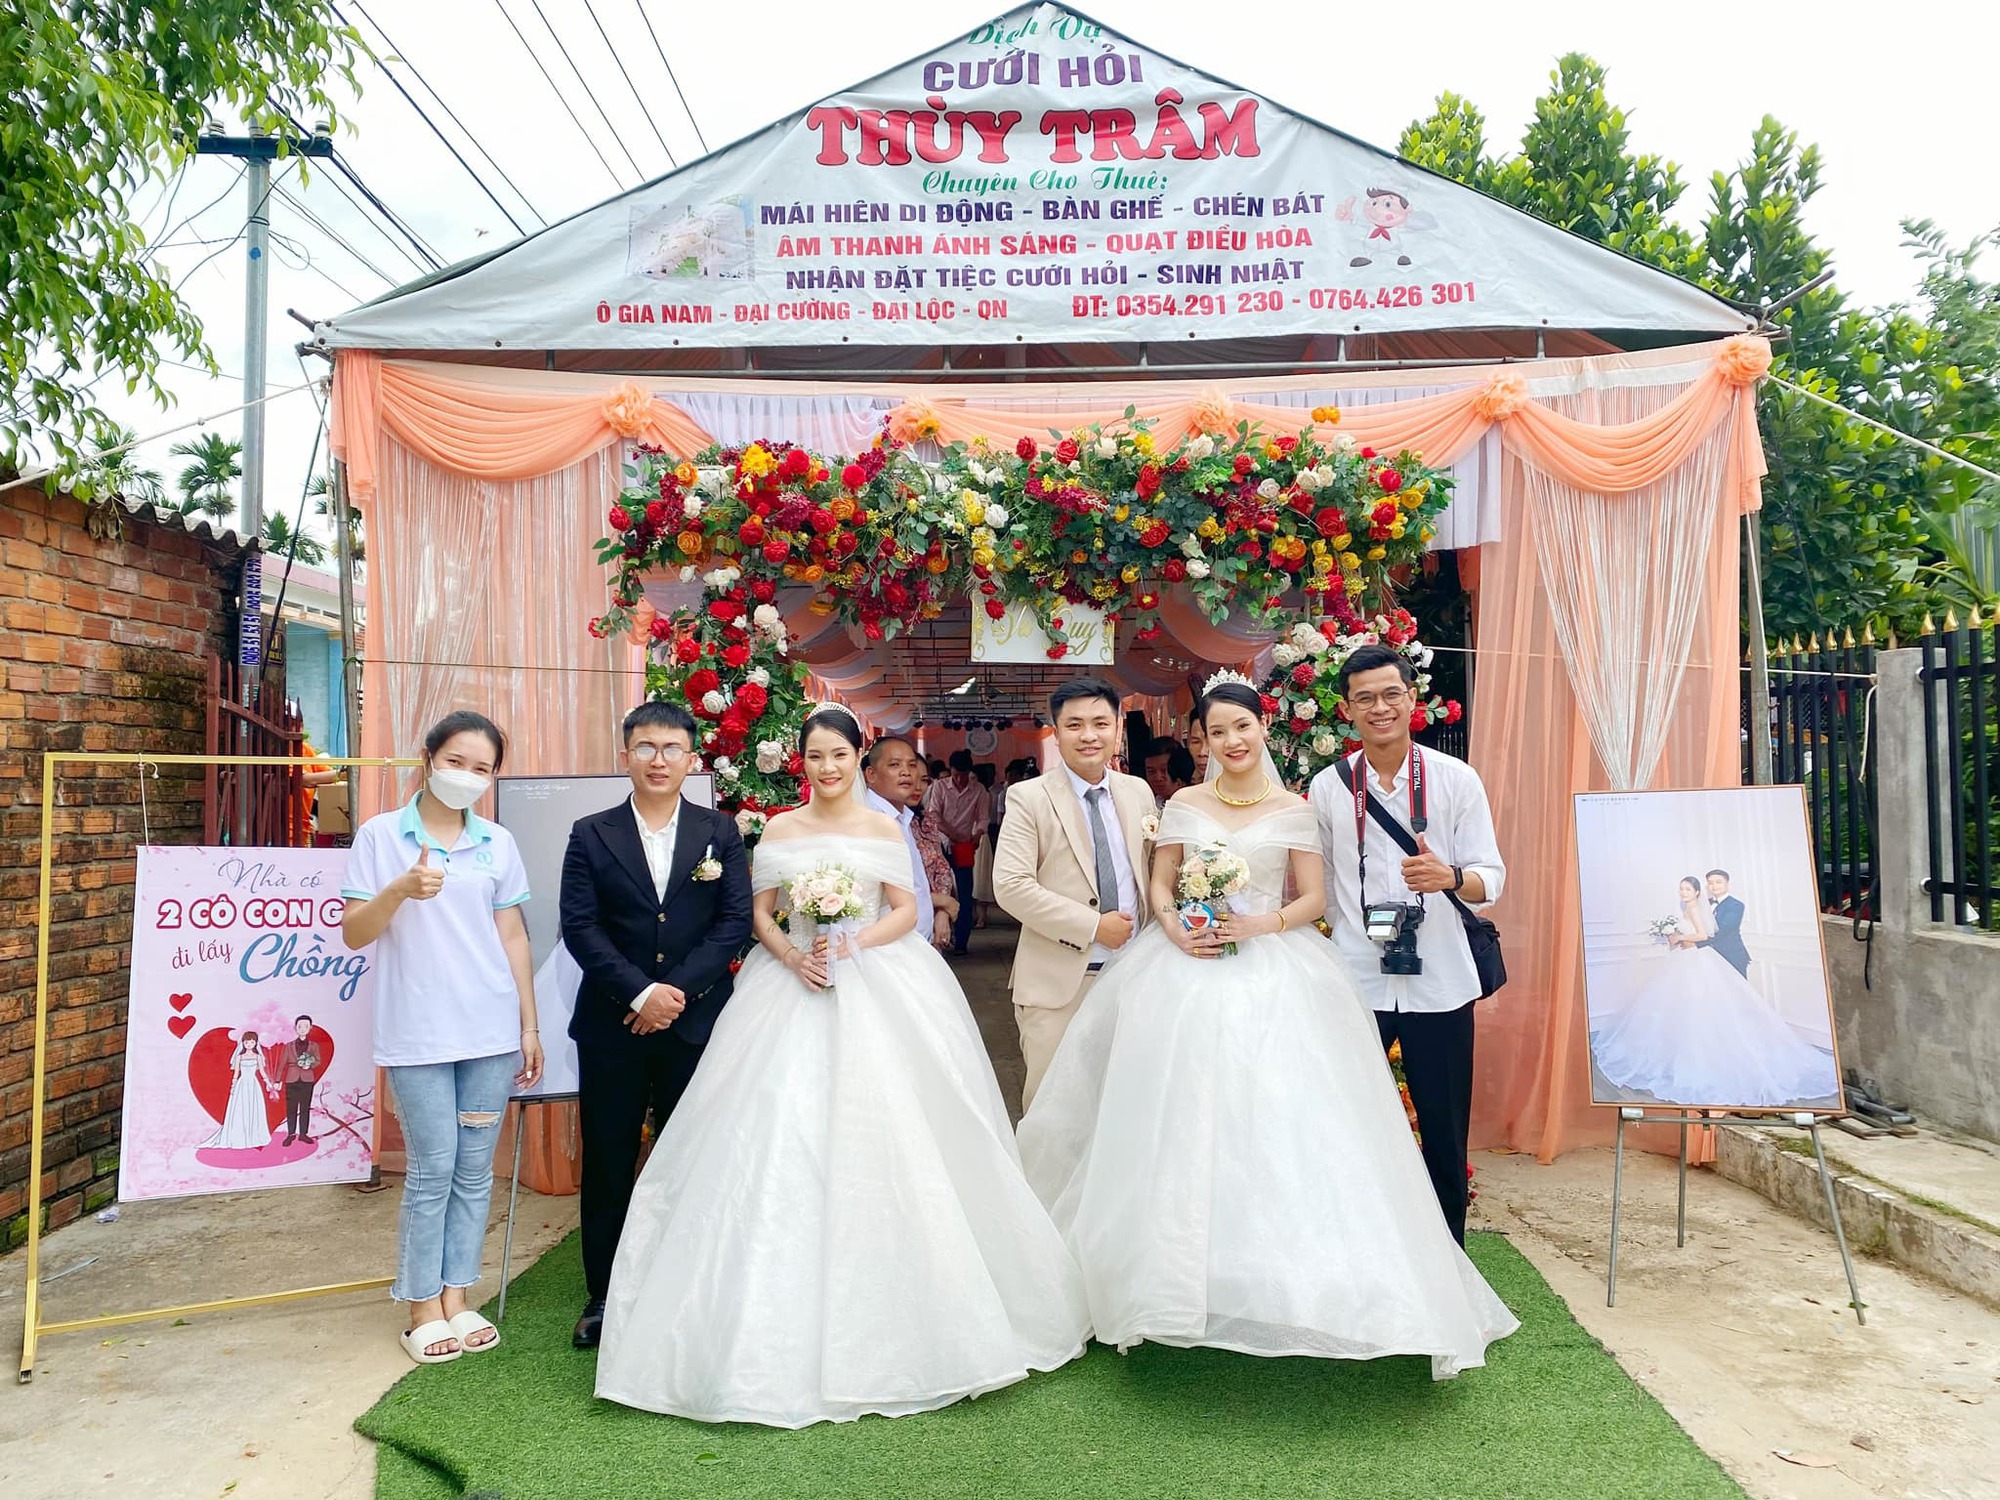 Chị em song sinh lên ‘xe hoa’ cùng ngày ở Quảng Nam: 'Chuẩn bị đồ cưới lộn xộn nhưng may mắn thành công tốt đẹp!' - Ảnh 4.